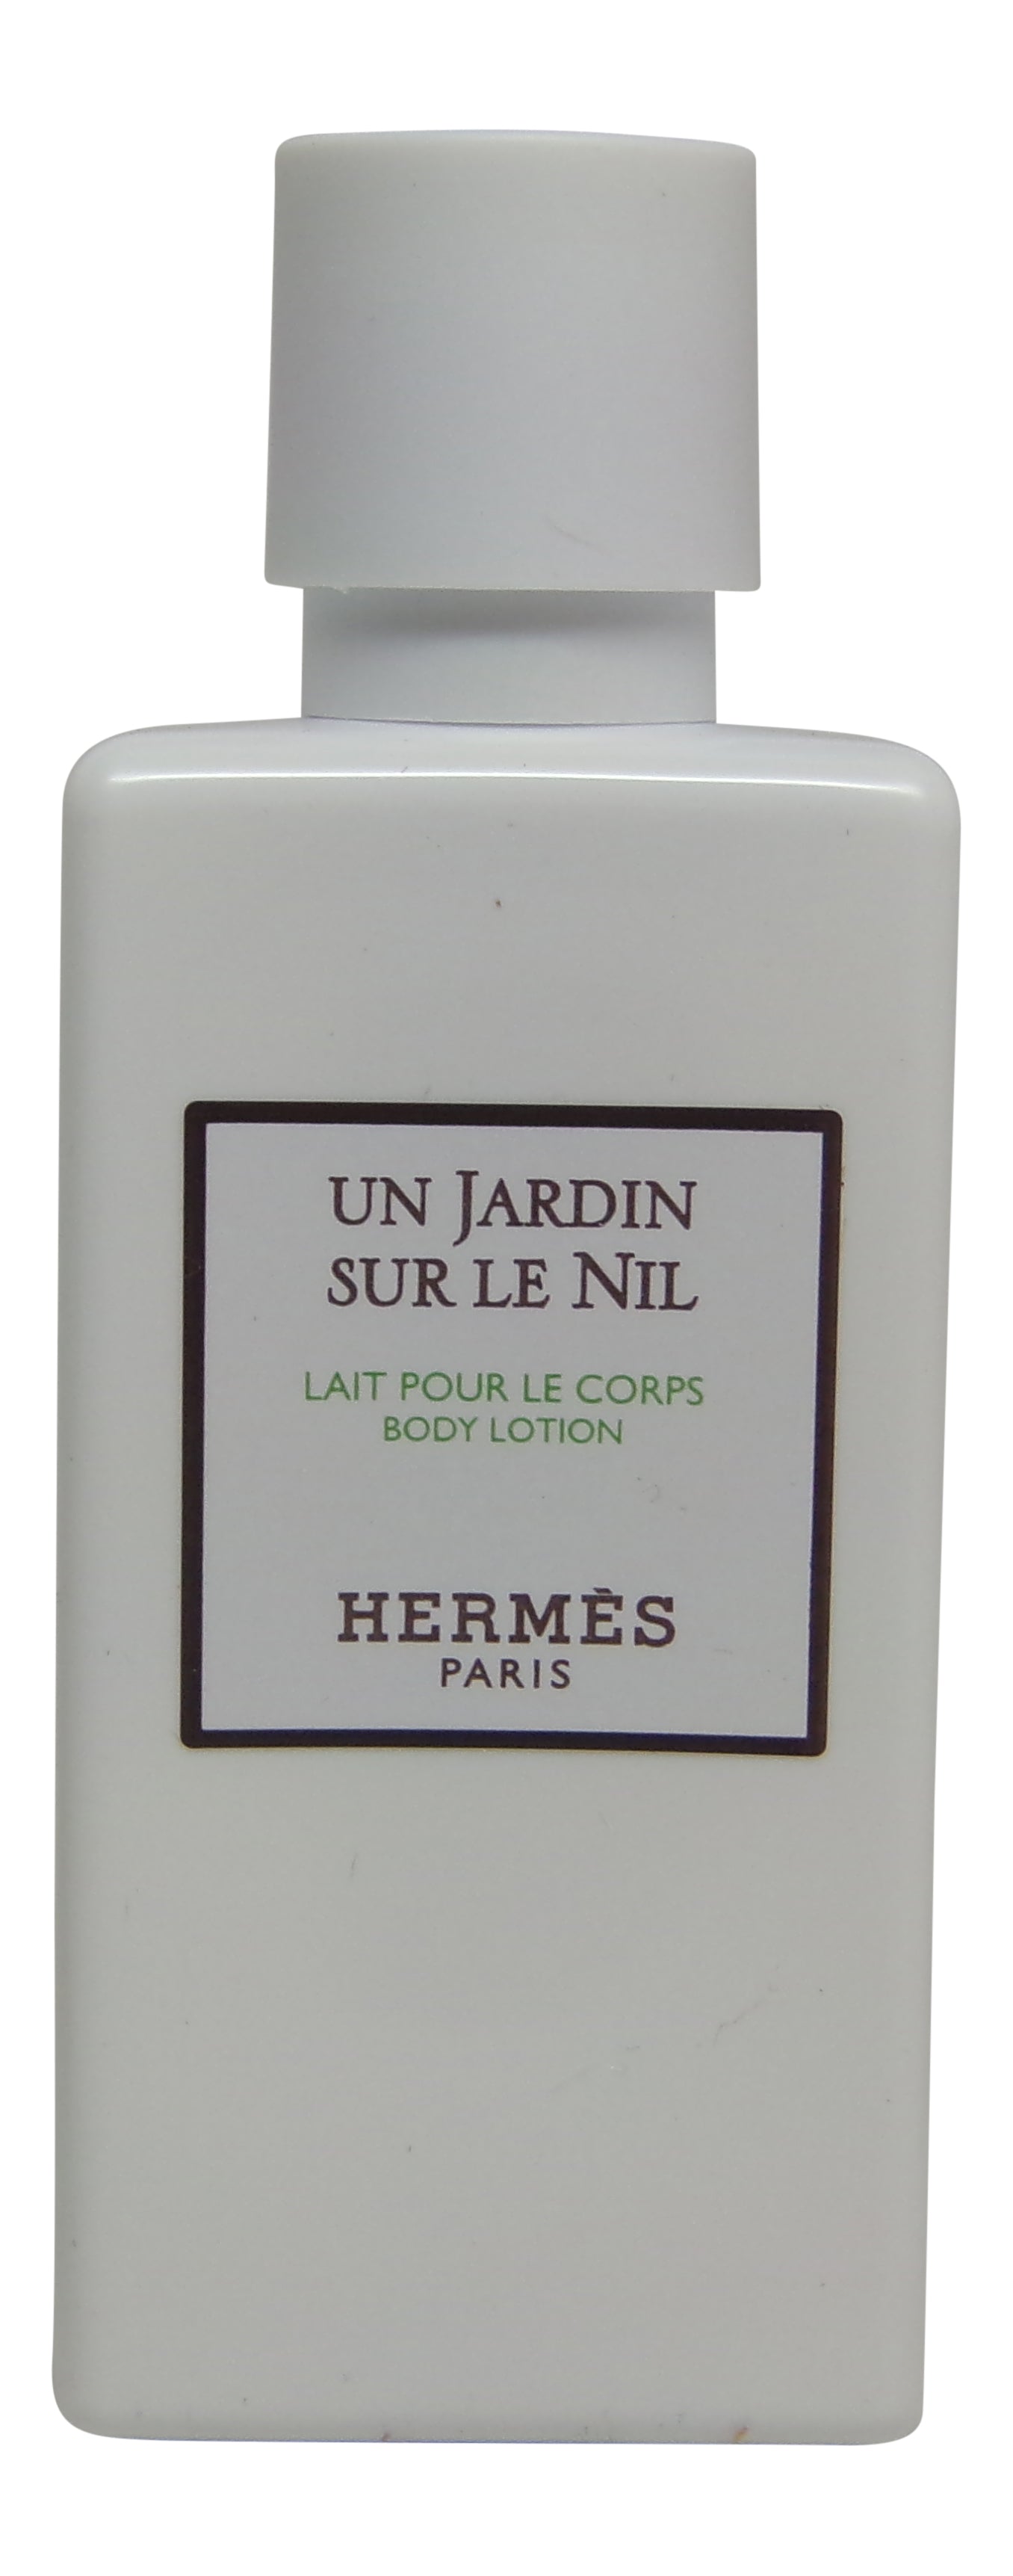 Hermes Un Jardin Sur le Nil Lotion lot of 12ea 1.35oz Bottles. Total of 16.2oz